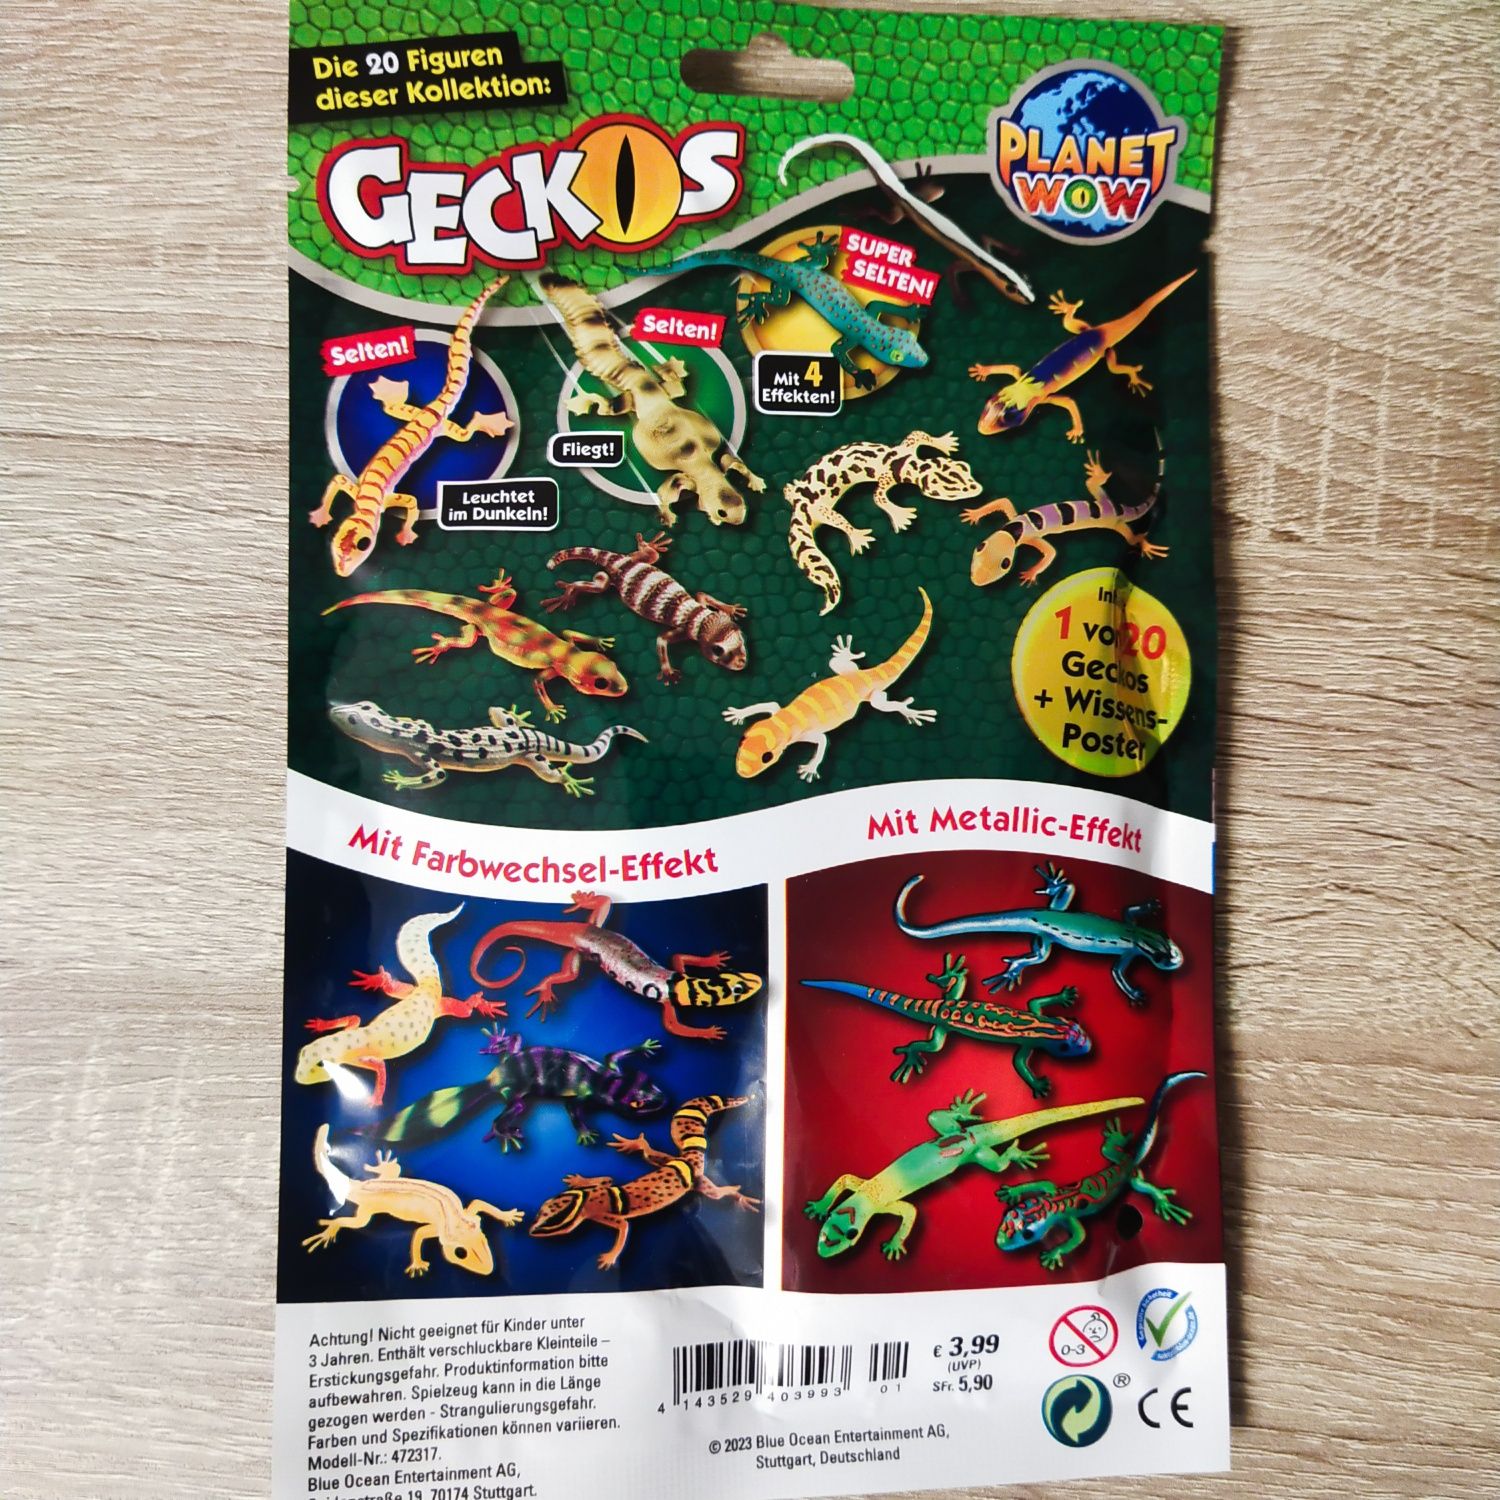 Geckos Гекон мініфігурки з здатністю